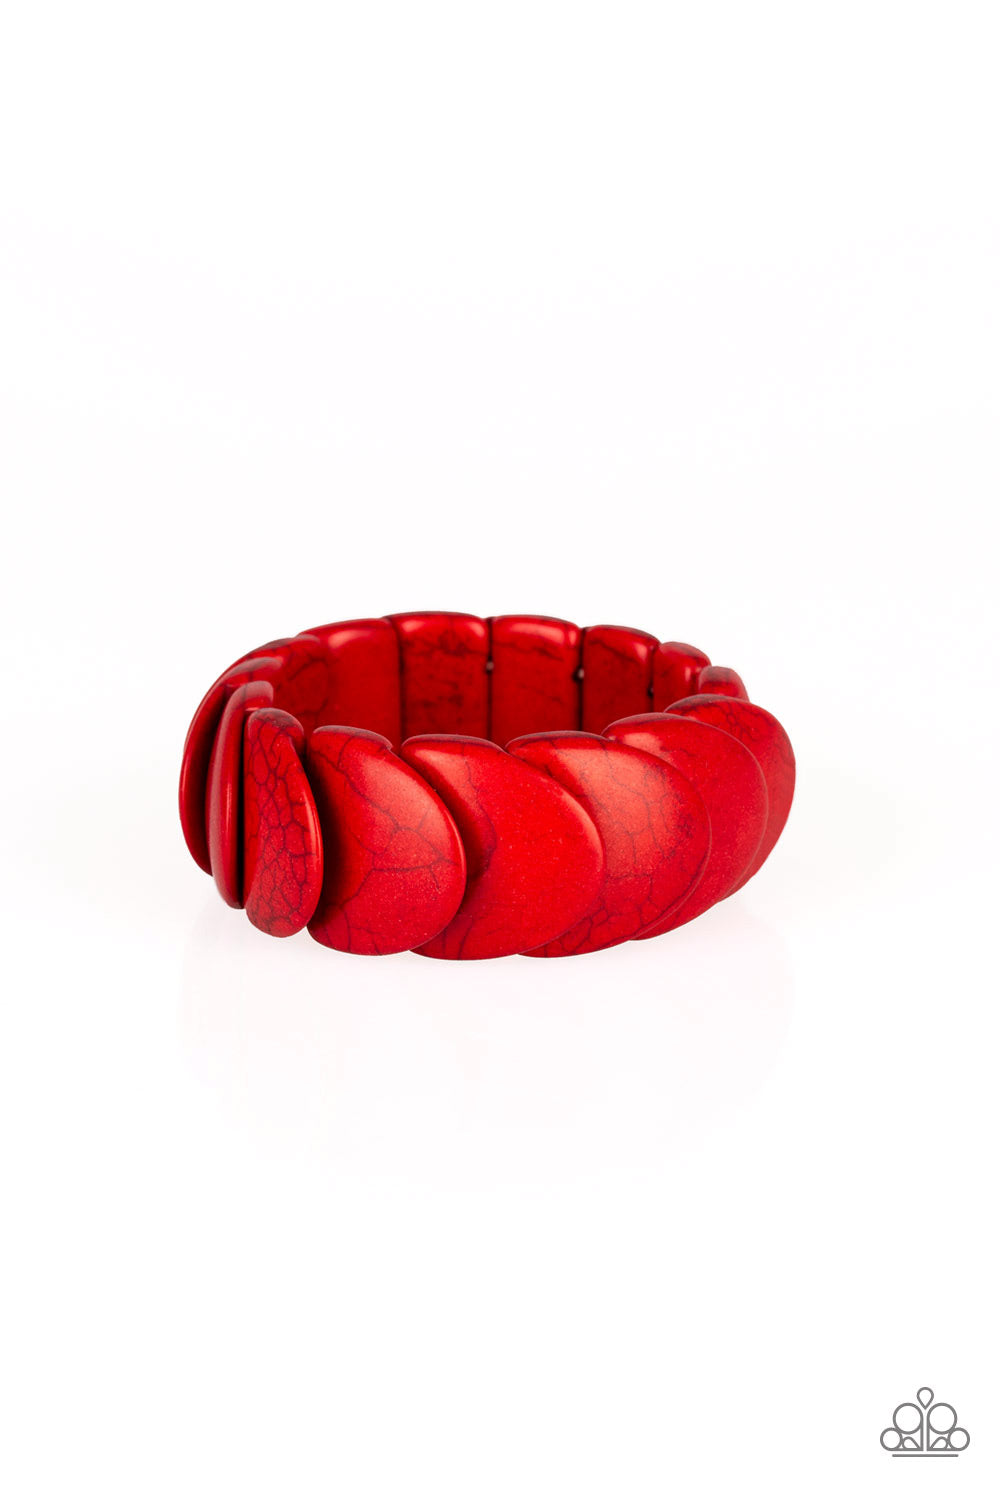 Nomadic Nature - Red Bracelet - Paparazzi Accessories - Paparazzi Accessories 